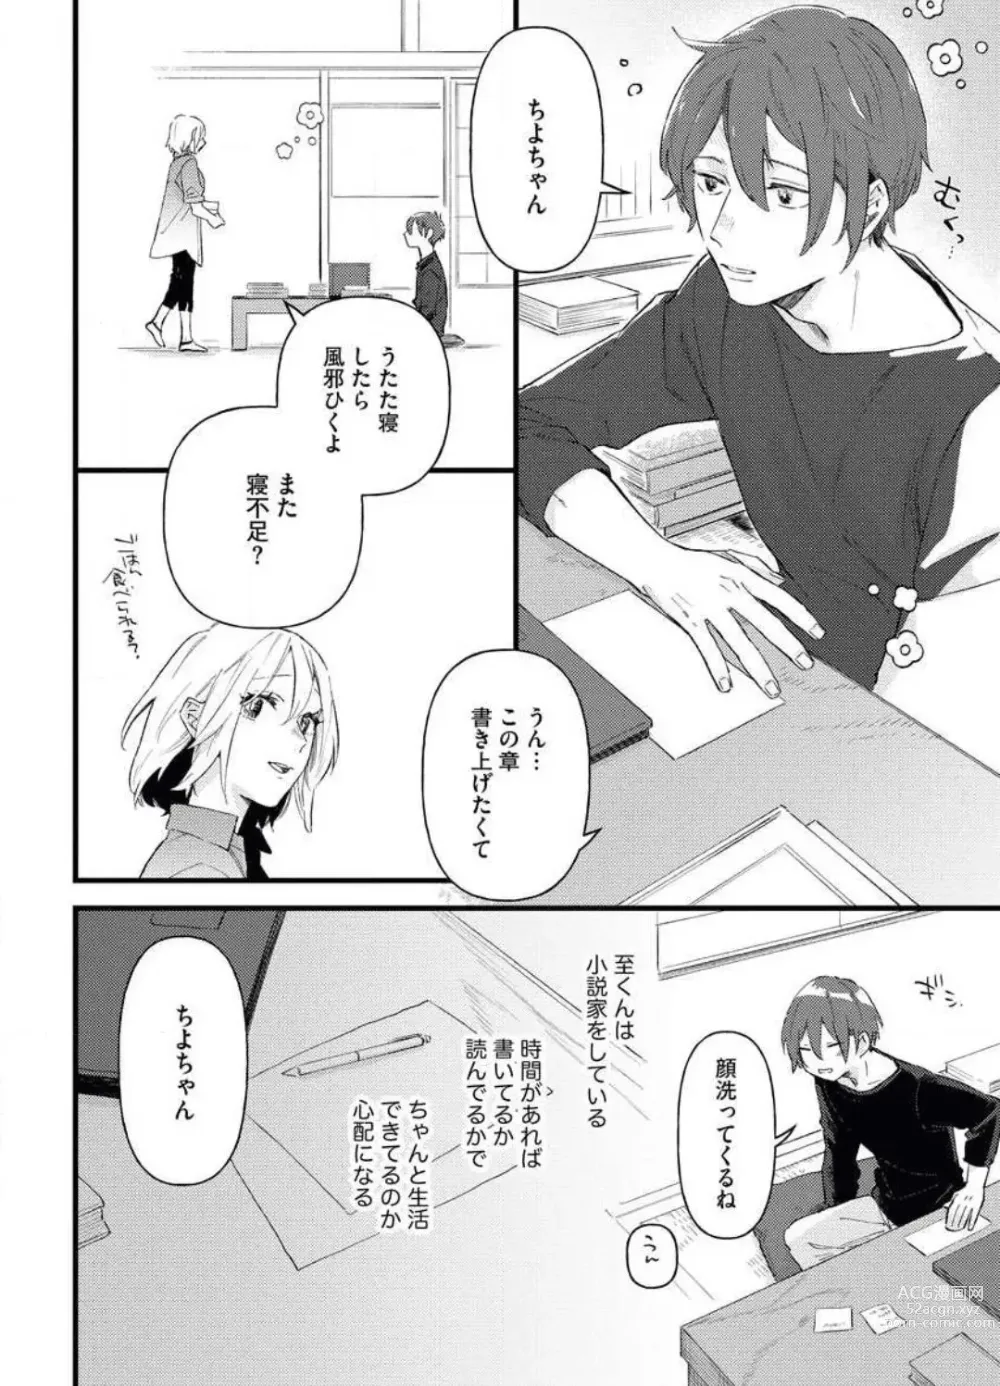 Page 6 of manga Gyokusai Kakugo de Dekiai Sengen~Chp.1